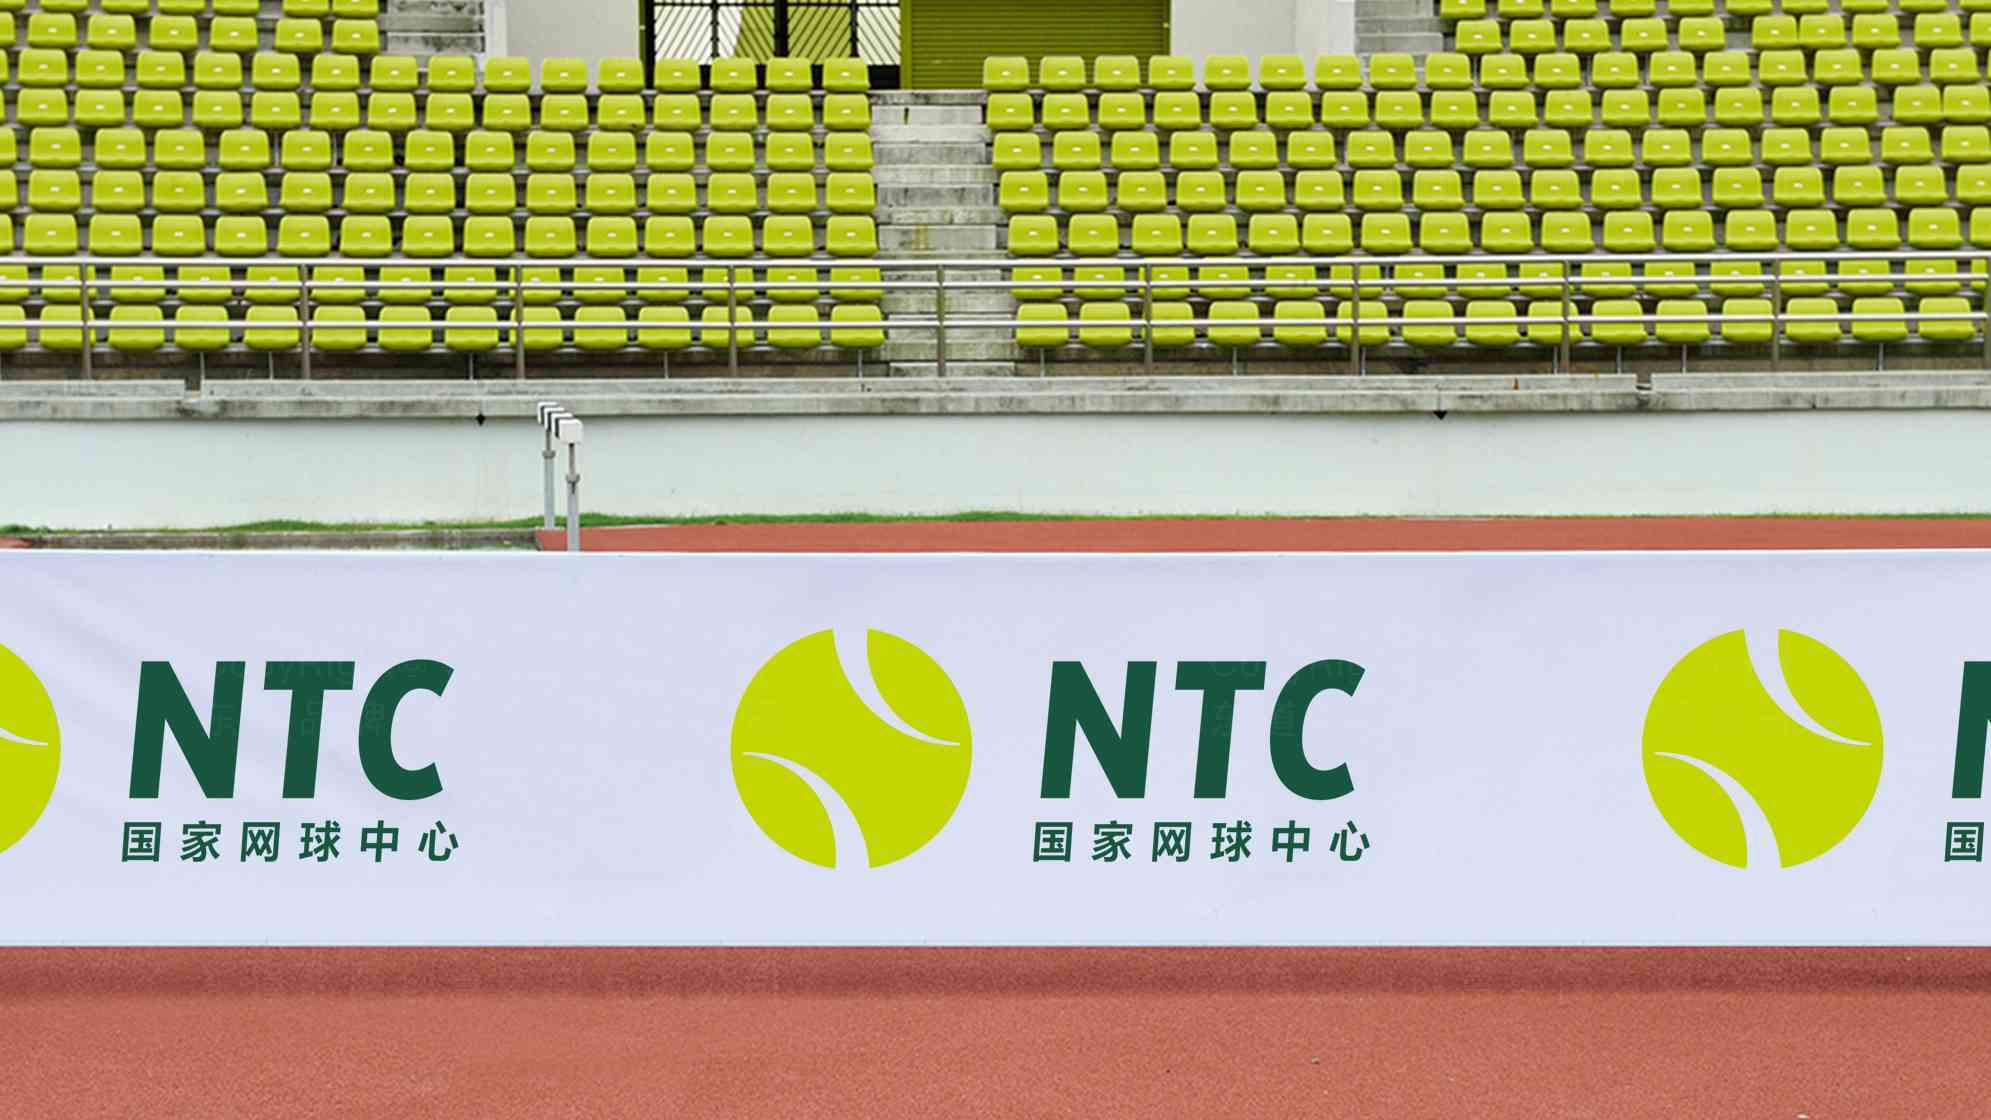 国家网球中心标志设计图片素材_6